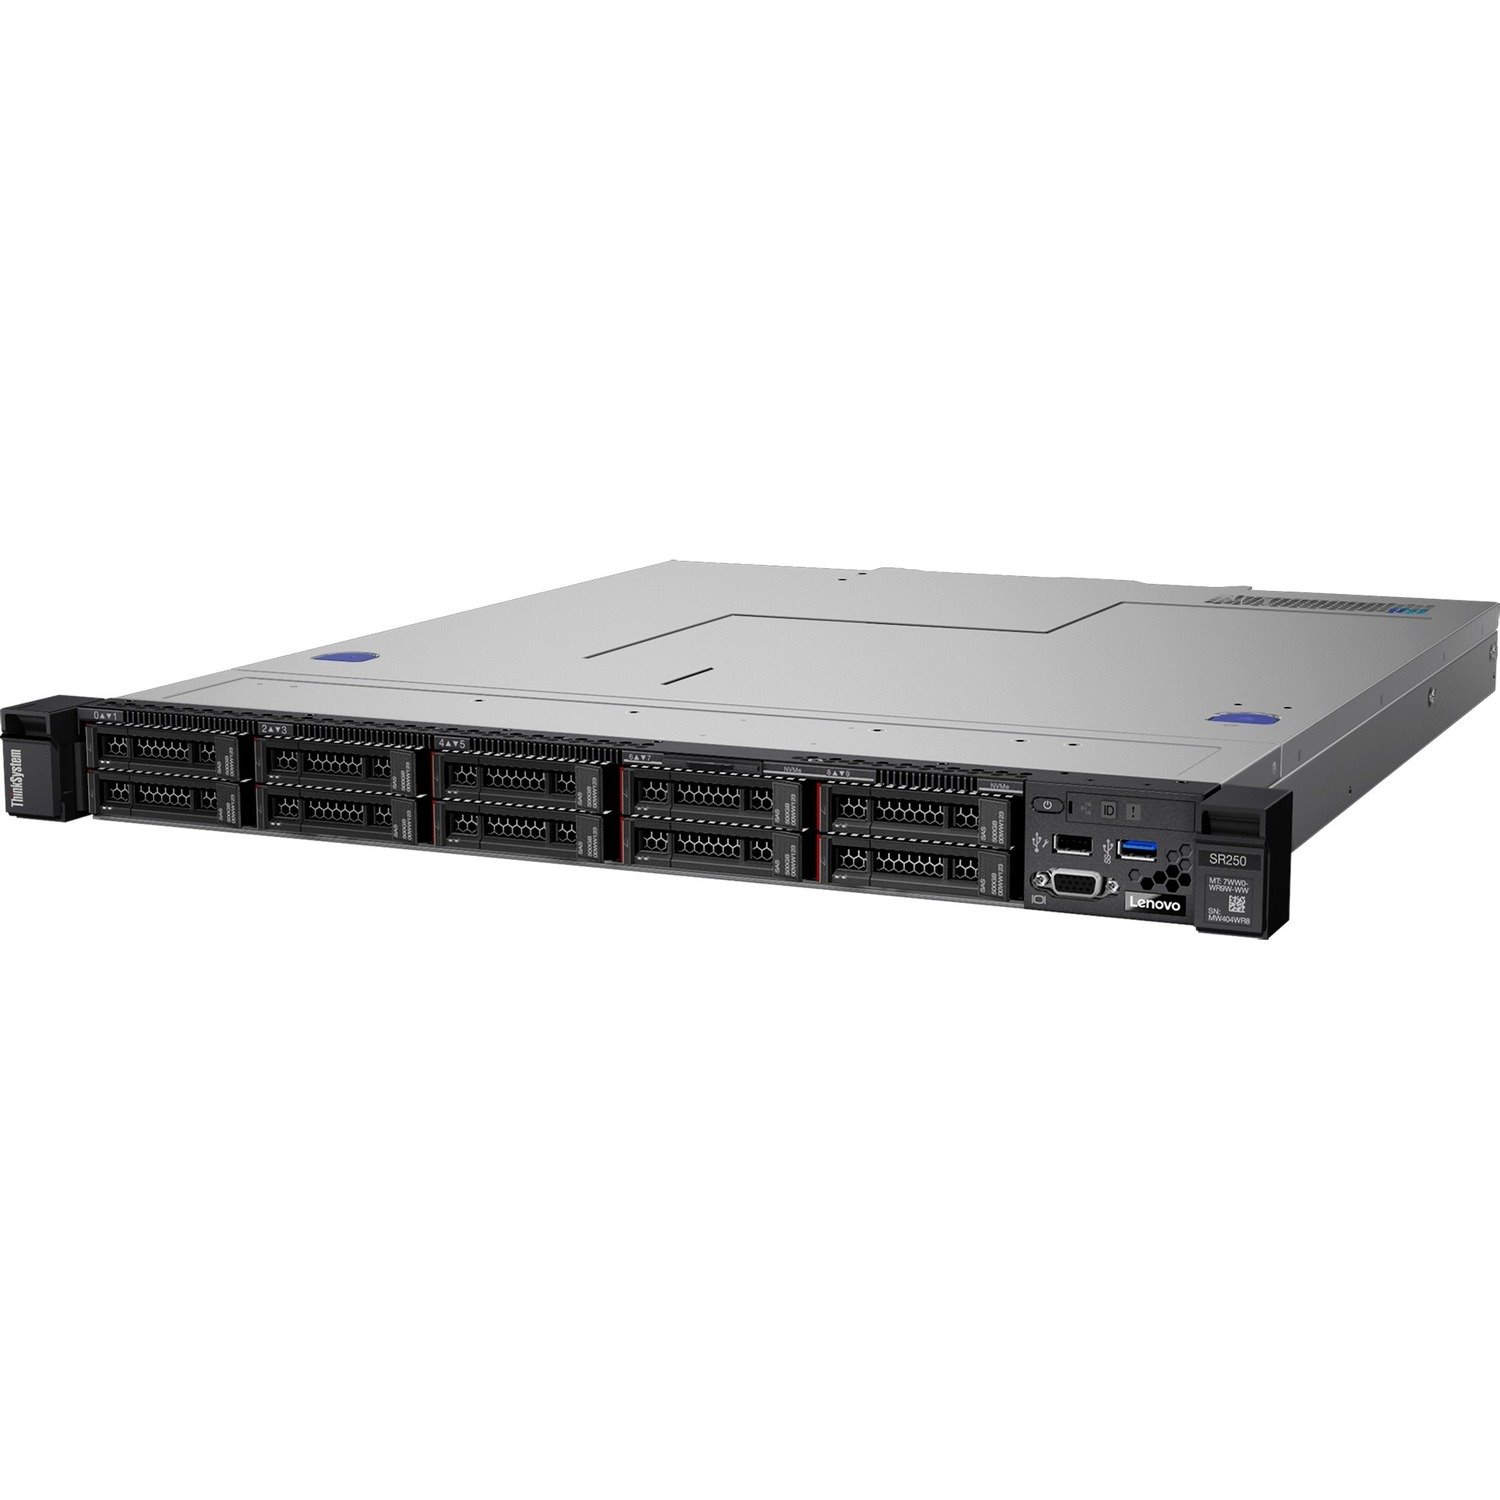 Lenovo ThinkSystem SR250 7Y51A01UAU 1U Rack Server - 1 x Intel Xeon E-2104G 3.20 GHz - 8 GB RAM - Serial ATA/600 Controller